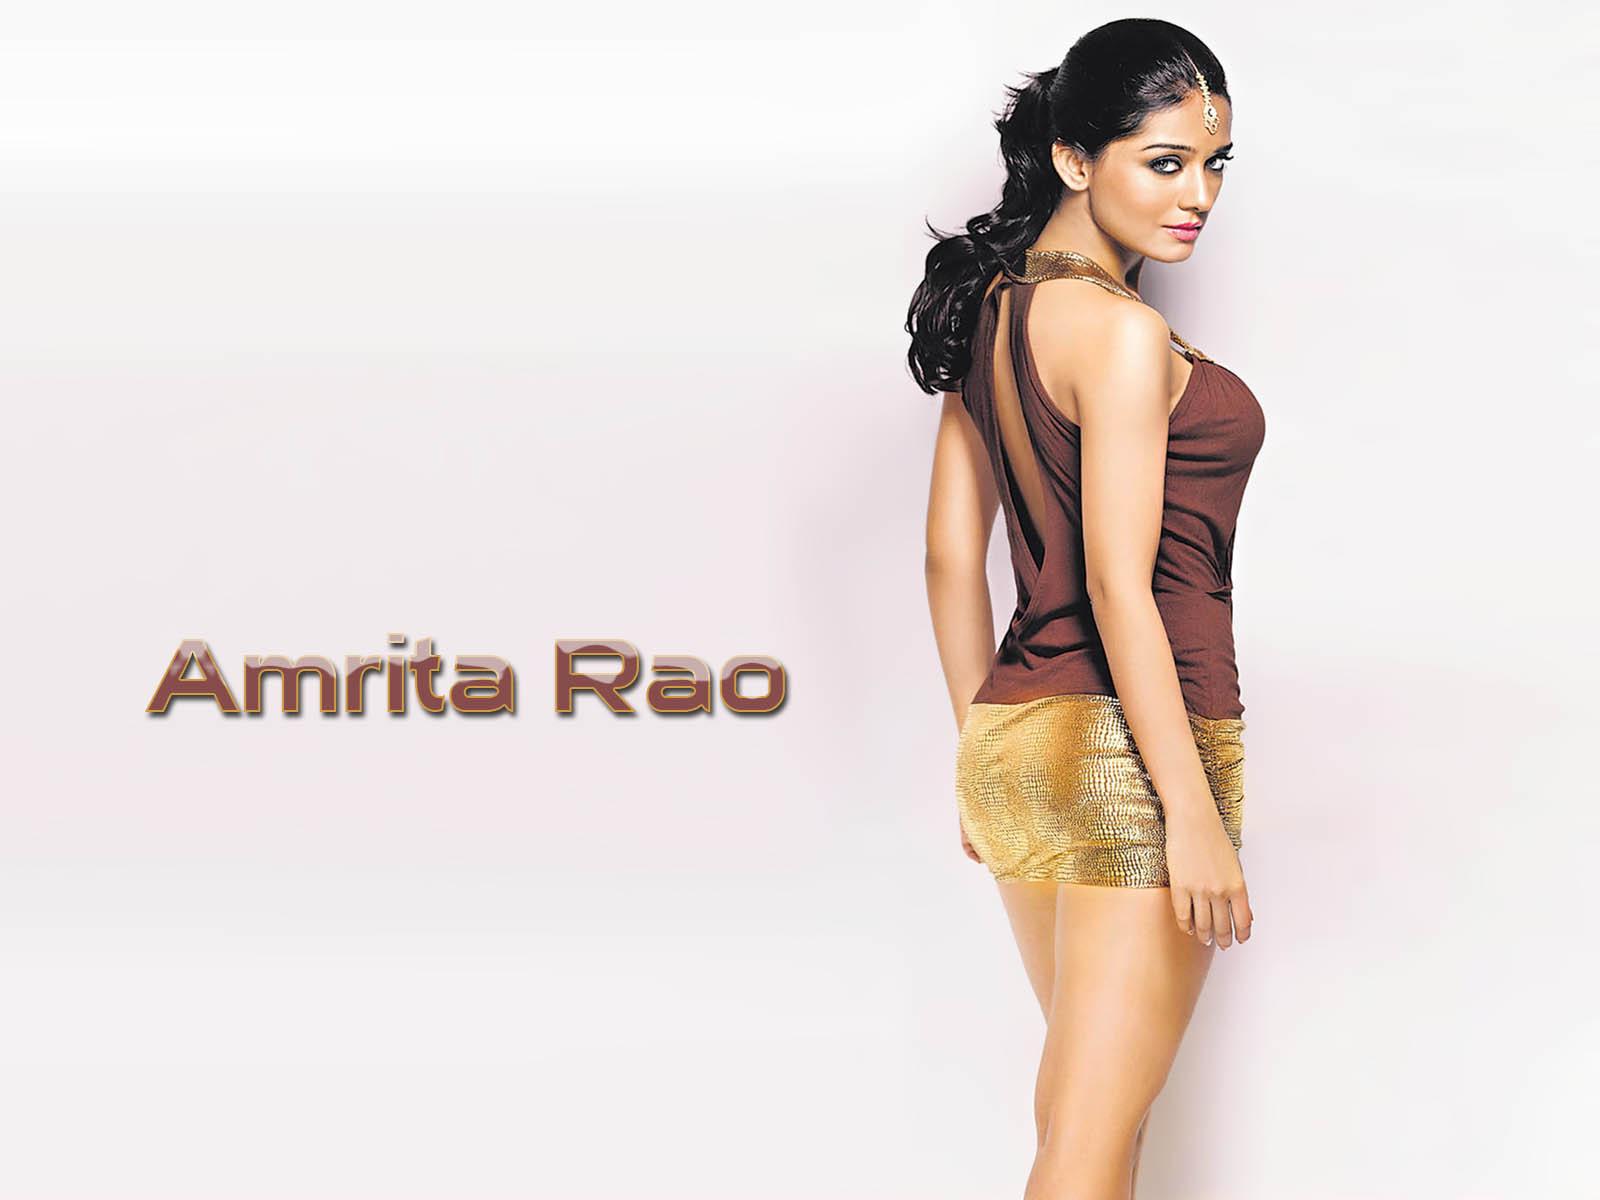 amrita rao boolywood hot actress photos and wallpapers.